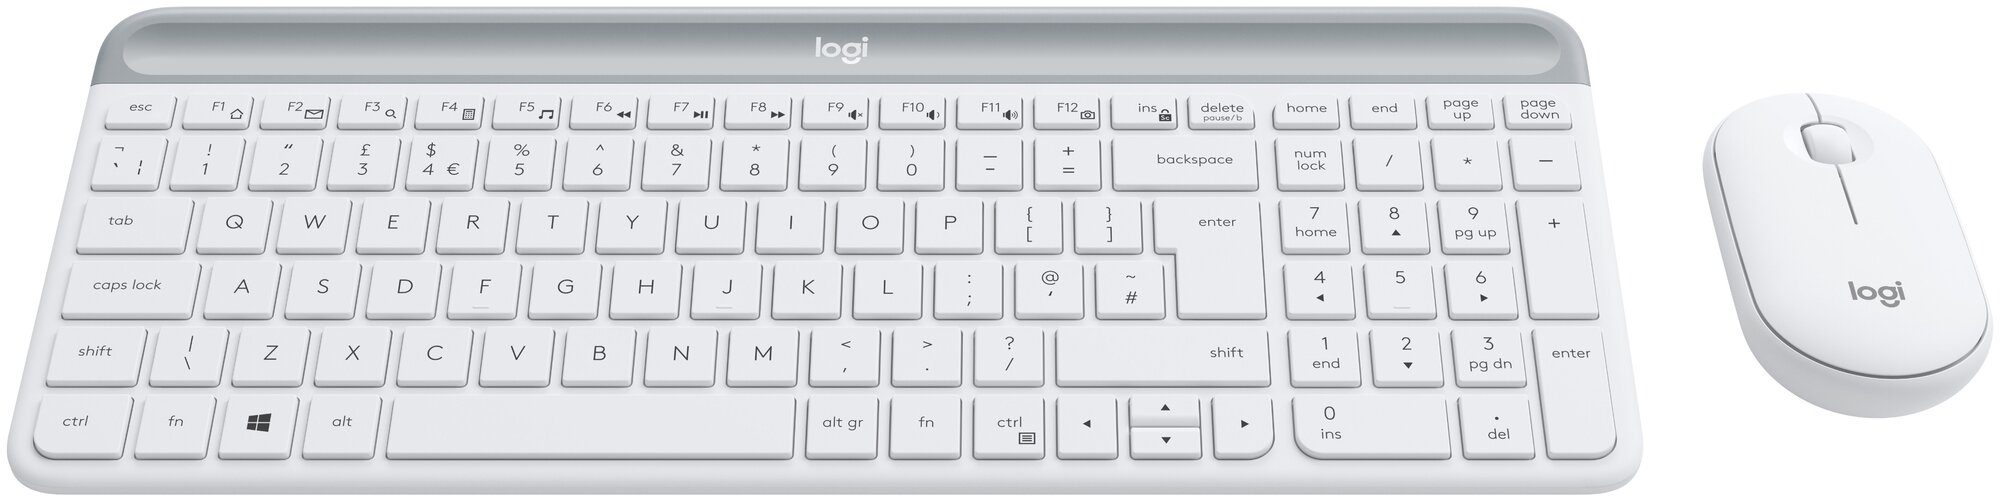 Комплект клавиатура + мышь Logitech MK470 Slim, белый, русская оригинальная раскладка, 920-009207